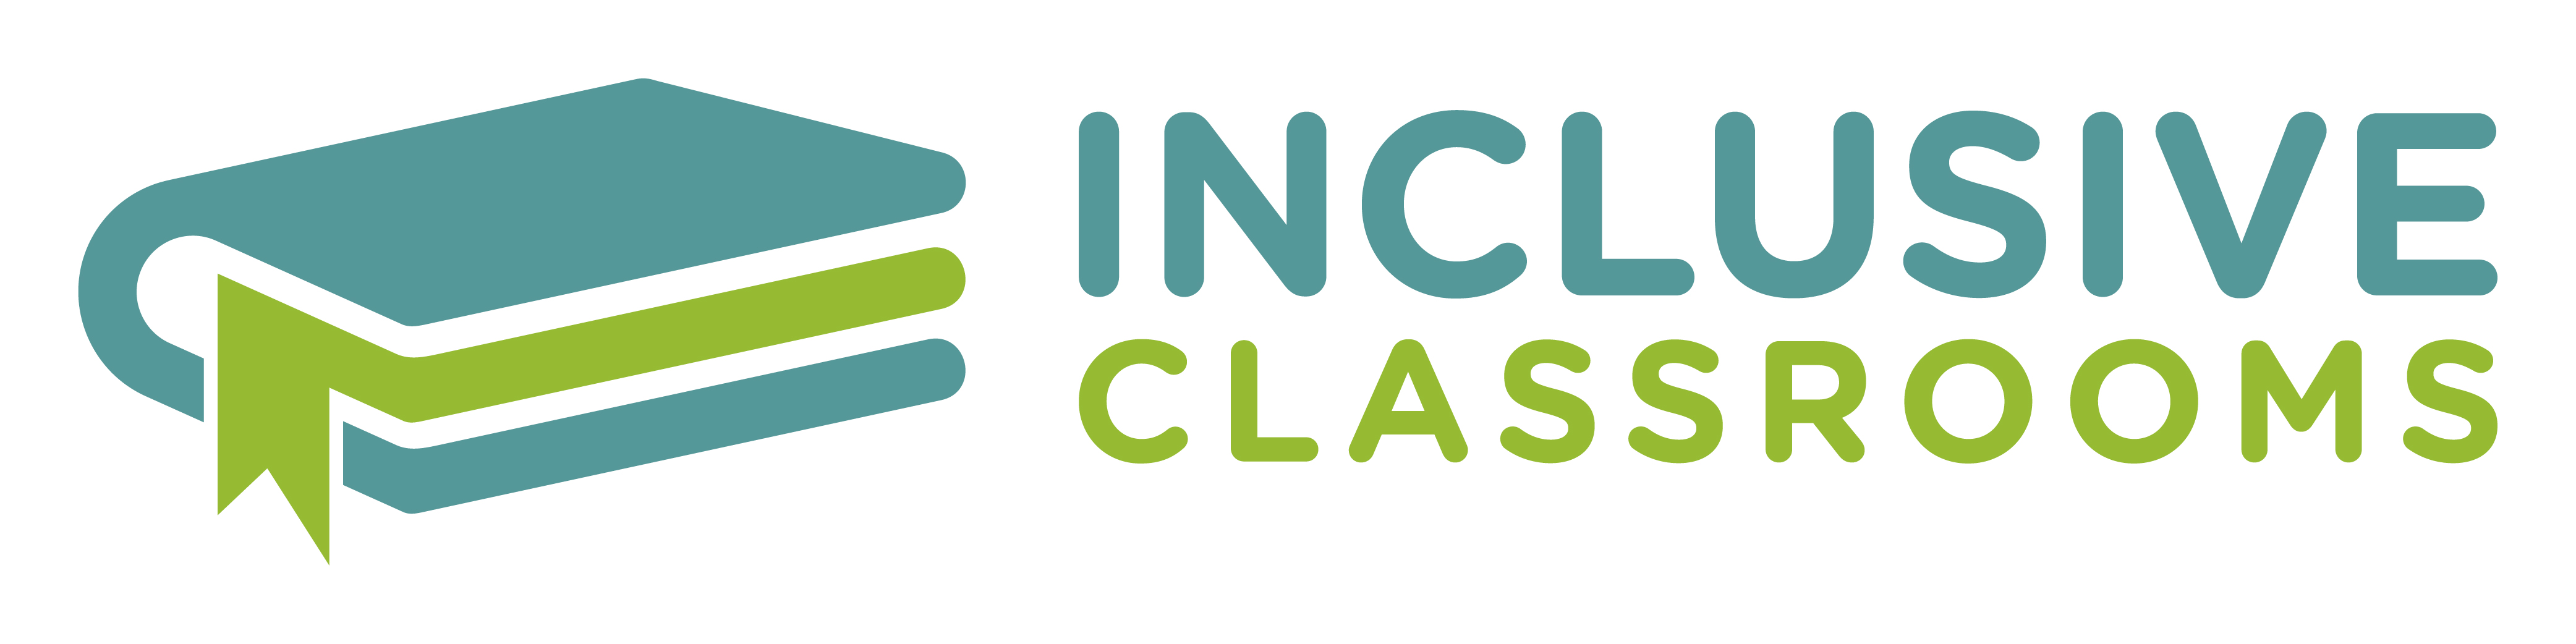 Inclusive Classrooms | Carlton North